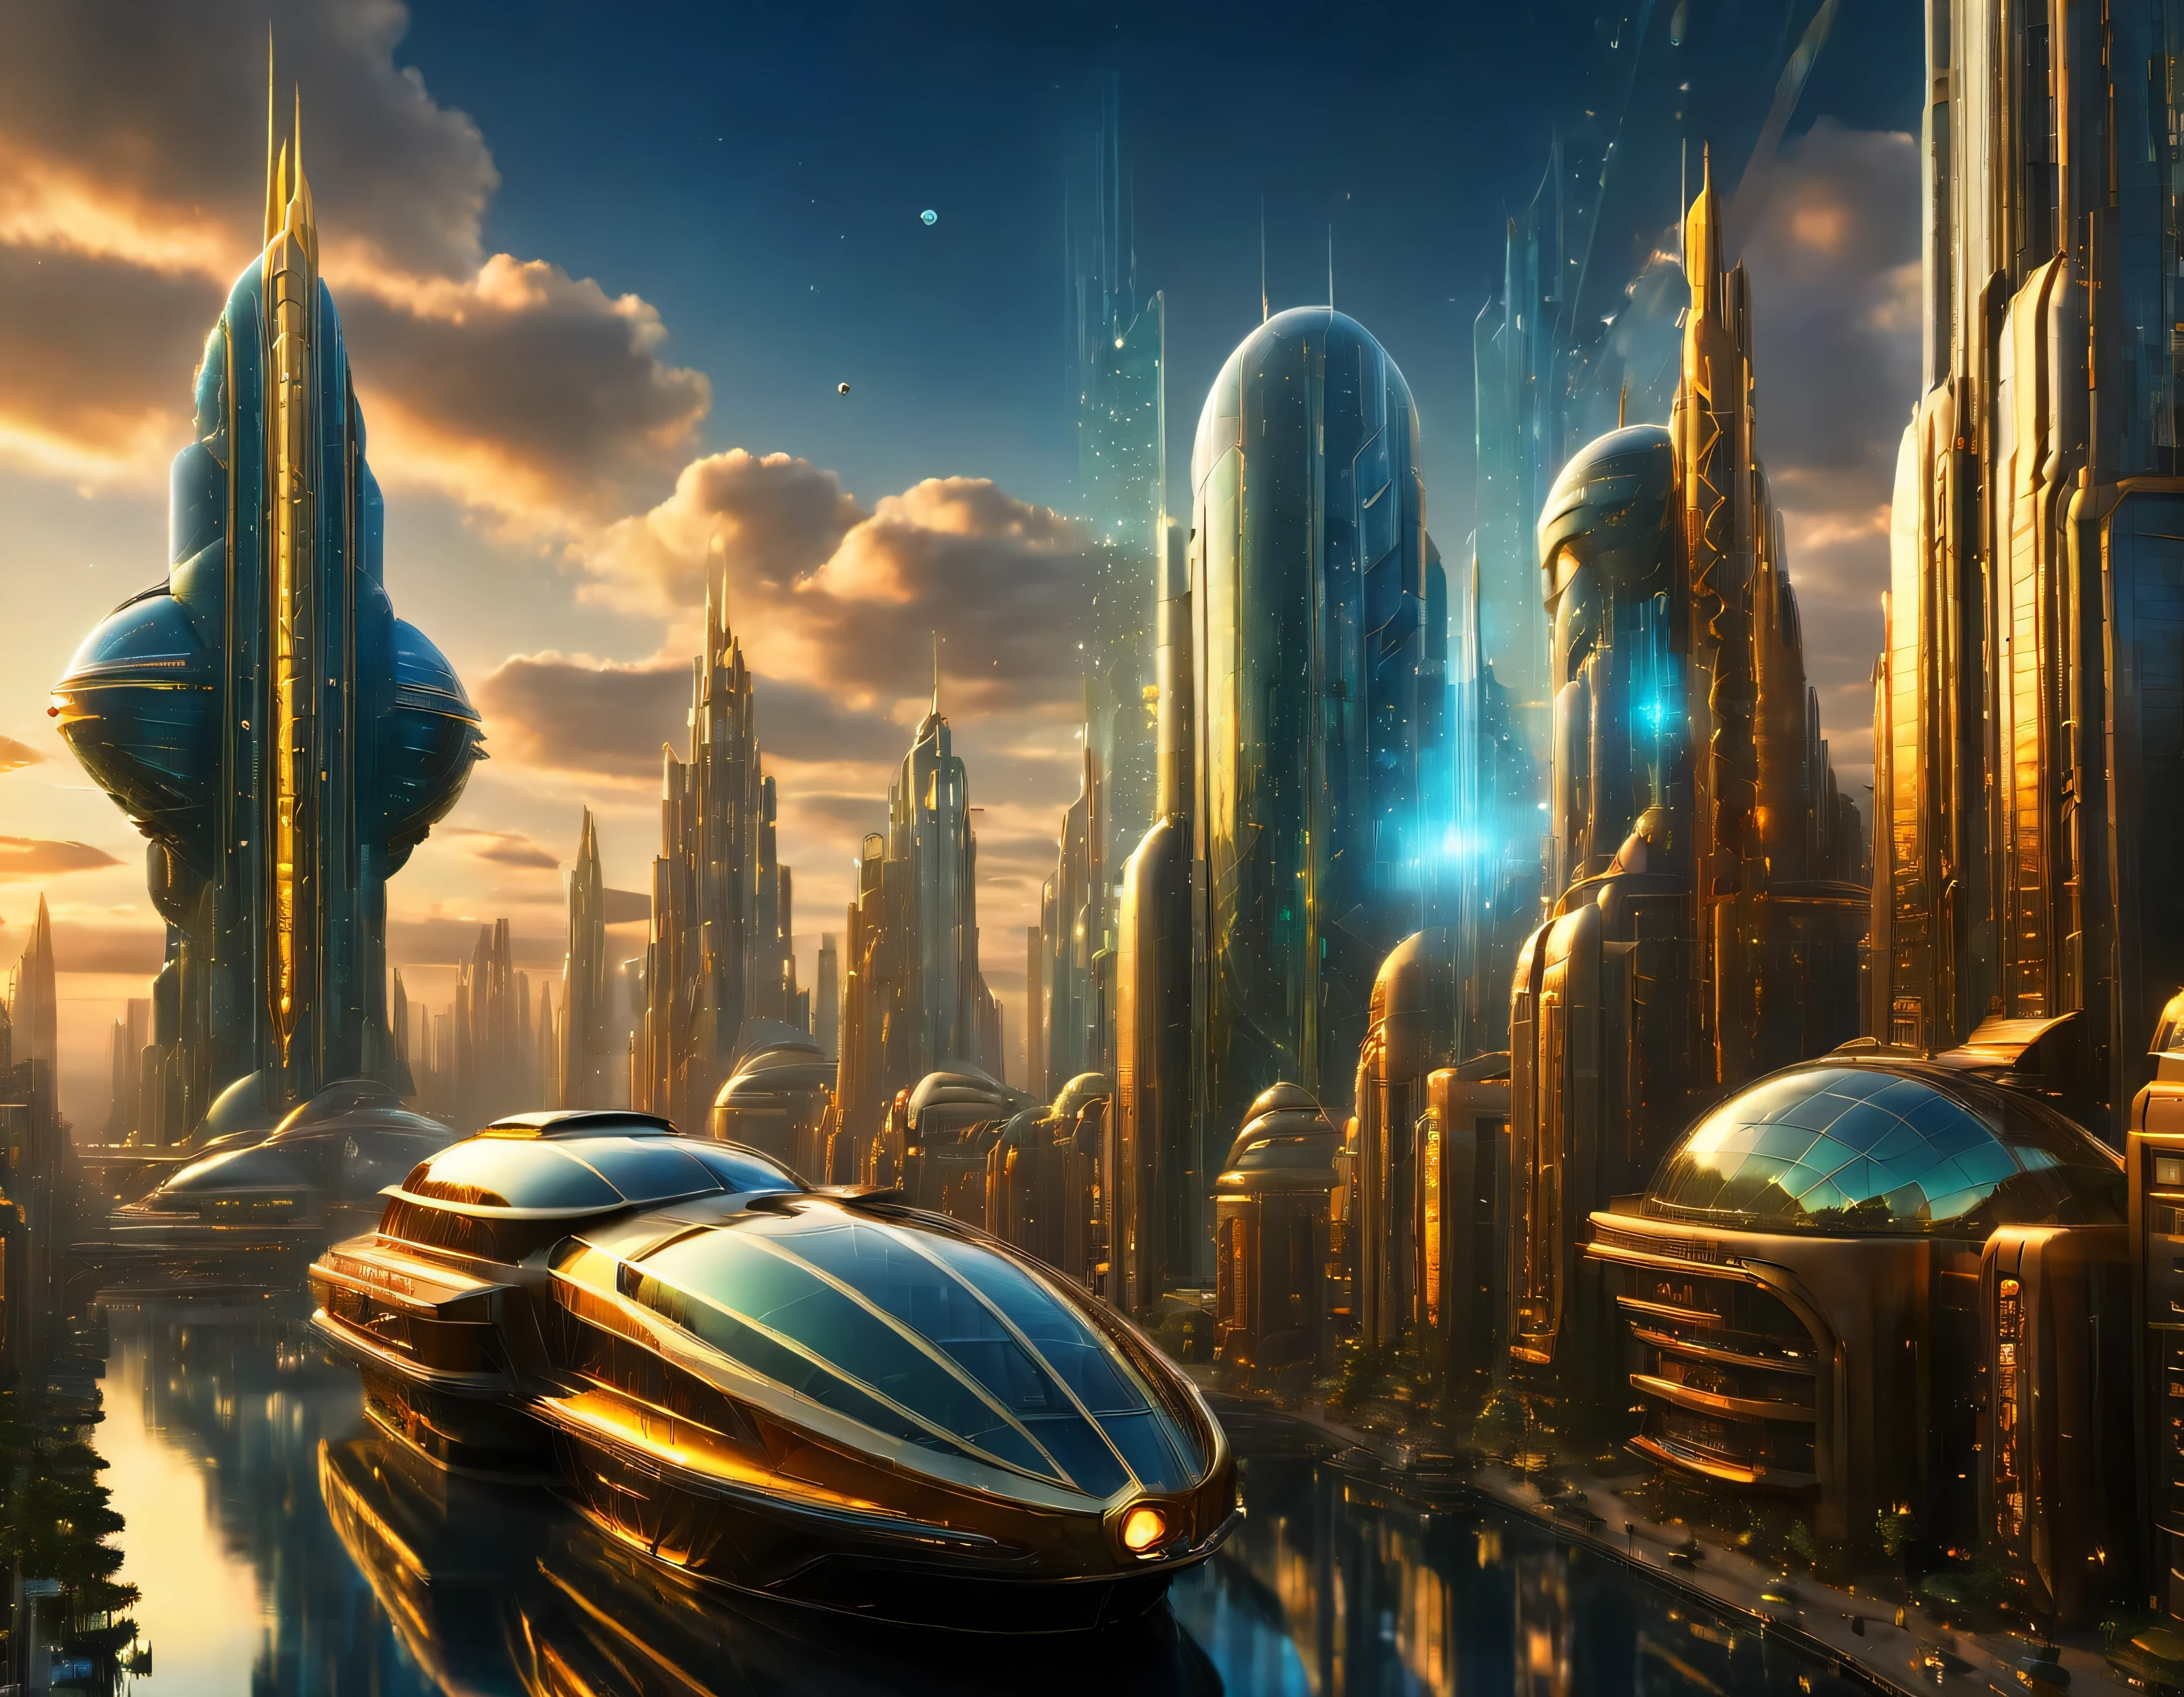 (освещение золотого часа), мегаполис, мегаполис воображаемого мира научной фантастики , похоже на футуристический Диснейленд, и максимум фантазии, с огромными зданиями и овальными и двенадцатигранными небоскребами, сгруппированными вместе из металла и стекла, где преобладают бриллианты и красочная световая реклама.. четкое изображение 8k, (сложные детали машины), со многими зданиями вместе.(шедевр высшего качества).(фотореалистичное изображение), абсолютная резкость вплоть до фона